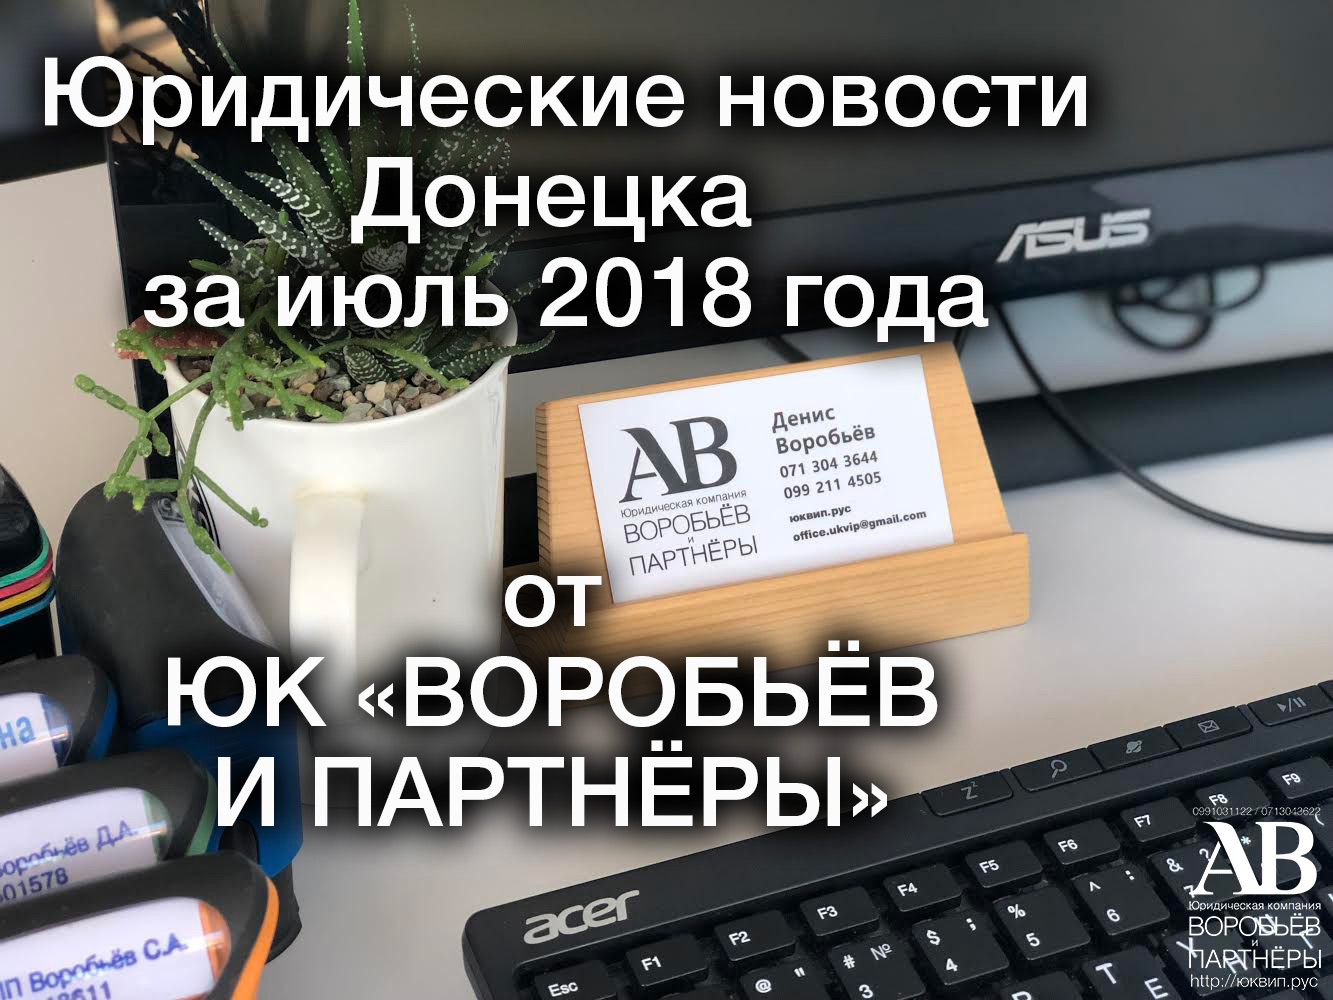 Донецк новости за июль 2018 года